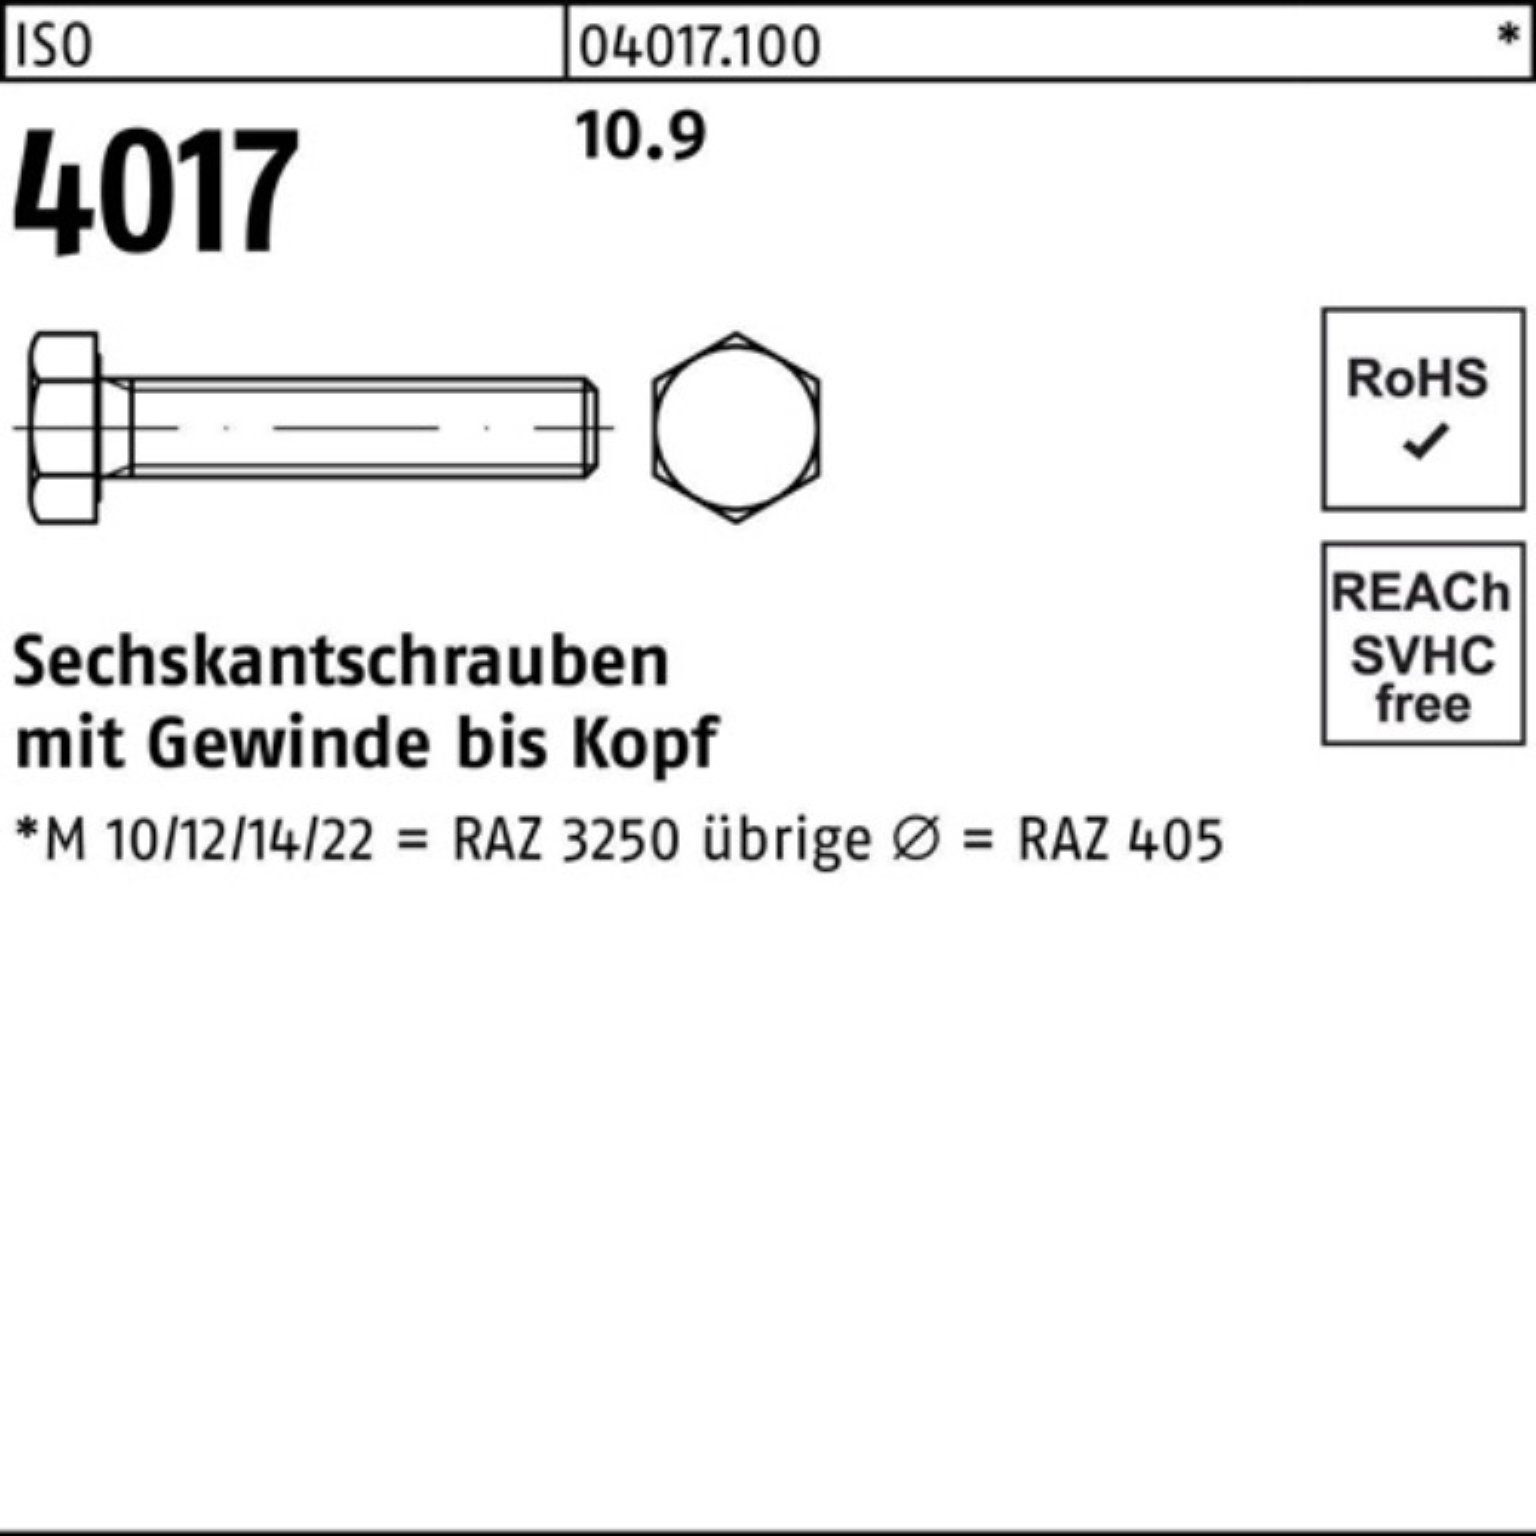 Bufab Sechskantschraube 100er Pack Sechskantschraube 25 10.9 ISO VG ISO 40 M22x 4017 Stück 75